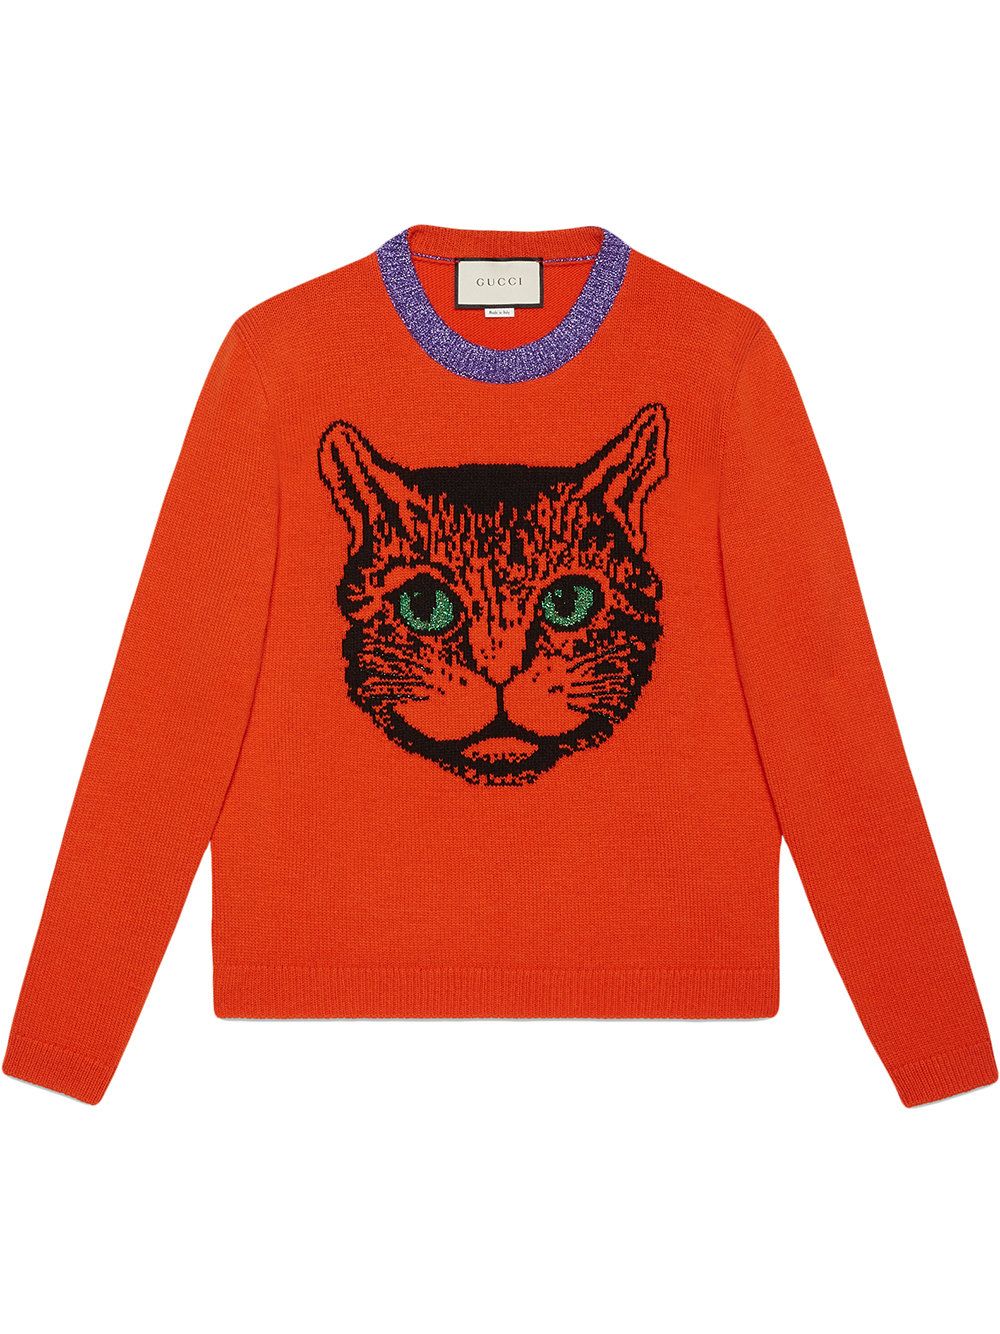 6-farfetch-gucci-mystic-cat-wool-knit-sweater-d6c0ab5bce06fc5dad1c87469d3fb48d.jpg